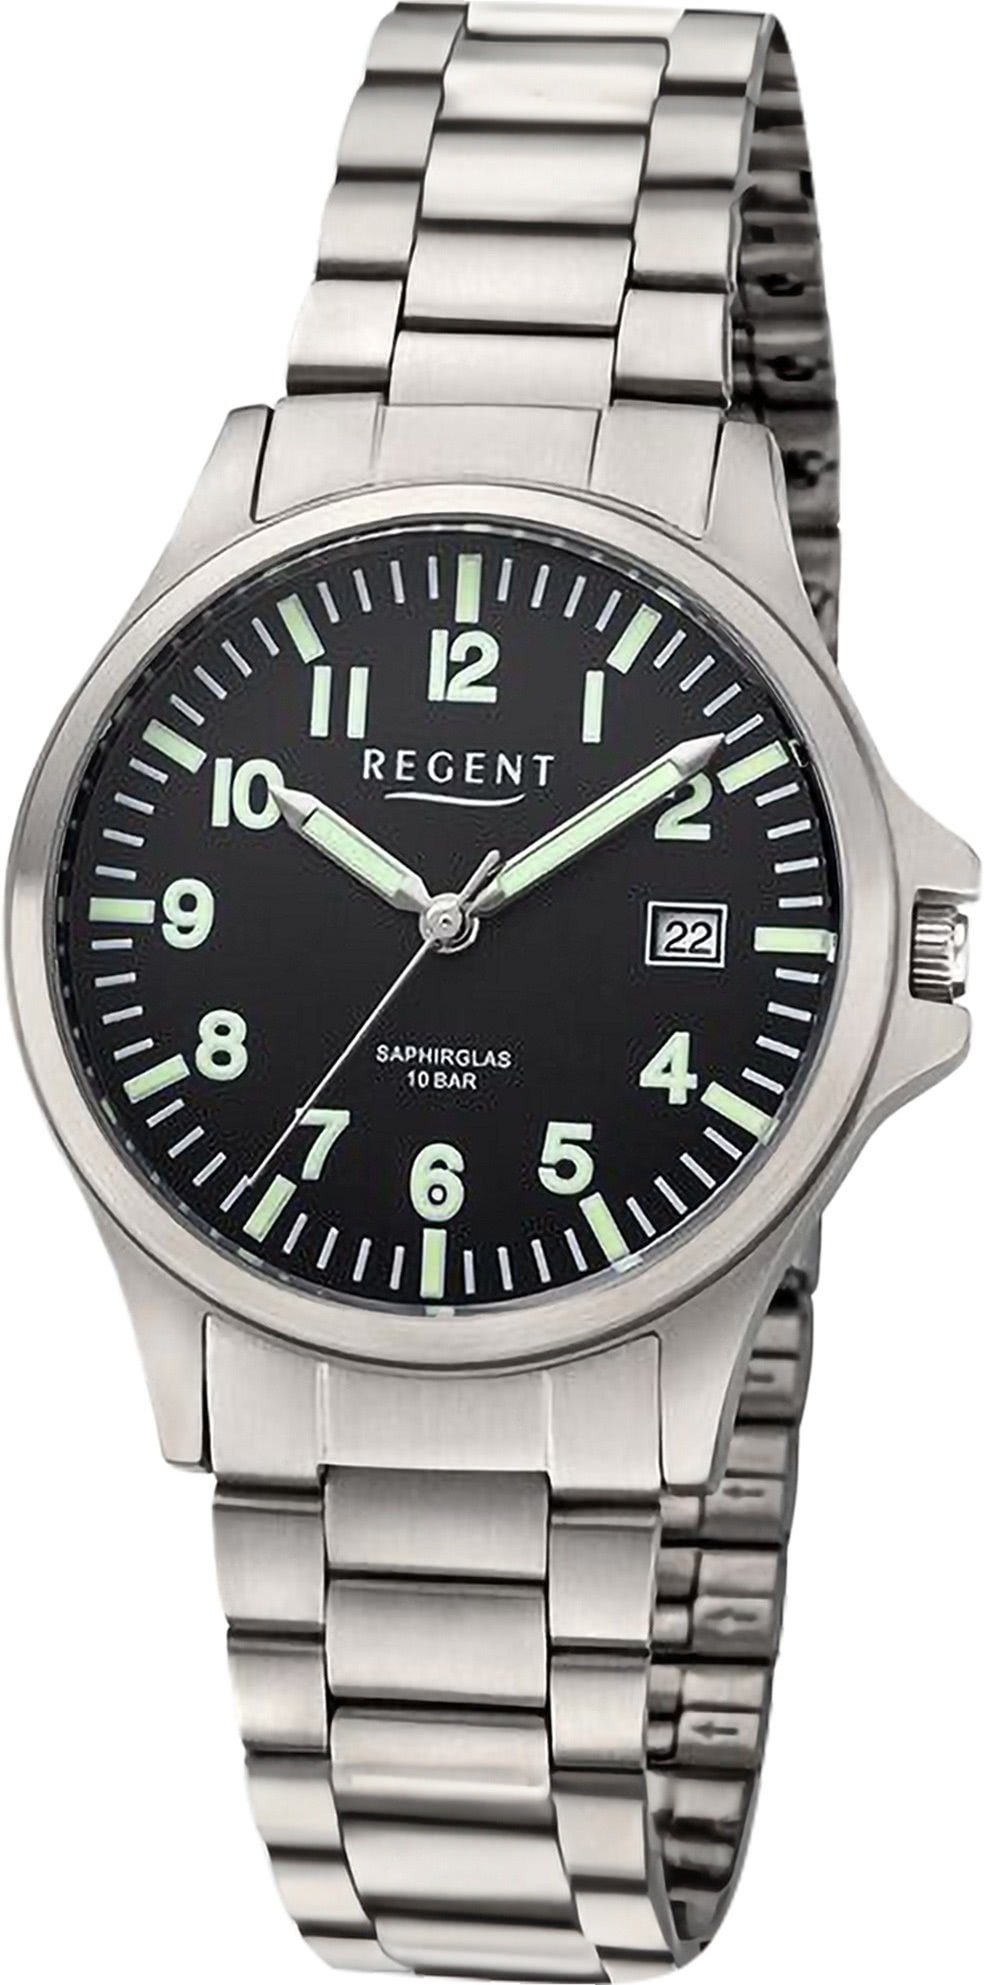 Regent Quarzuhr Regent (ca. Armbanduhr Armbanduhr Uhrzeit extra 36mm), Herren Analog, Metallarmband, Herren groß rund